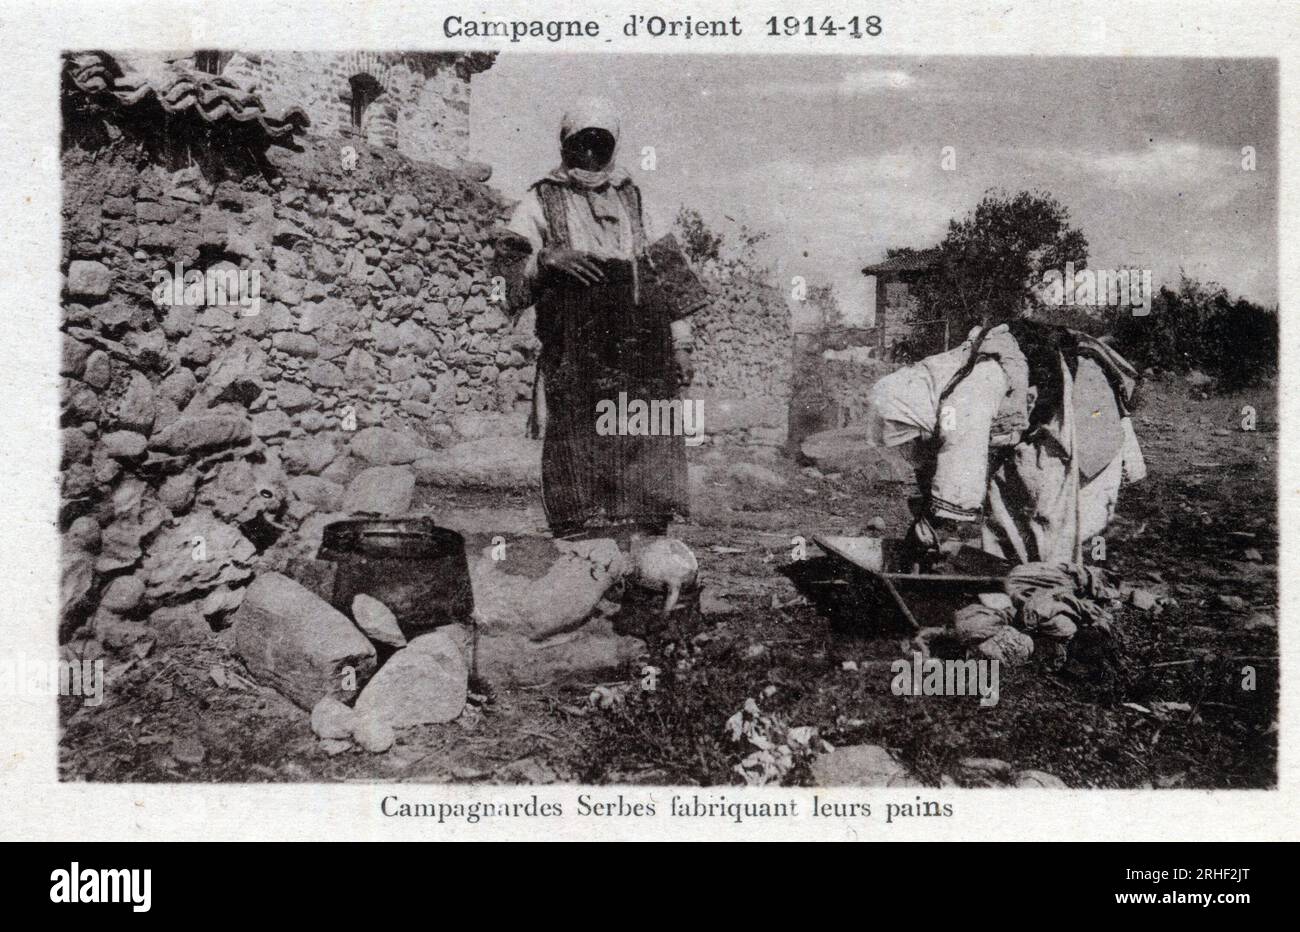 Serbie : paysannes serbes fabriquant leur pain - carte postale 1914-1918 Foto Stock